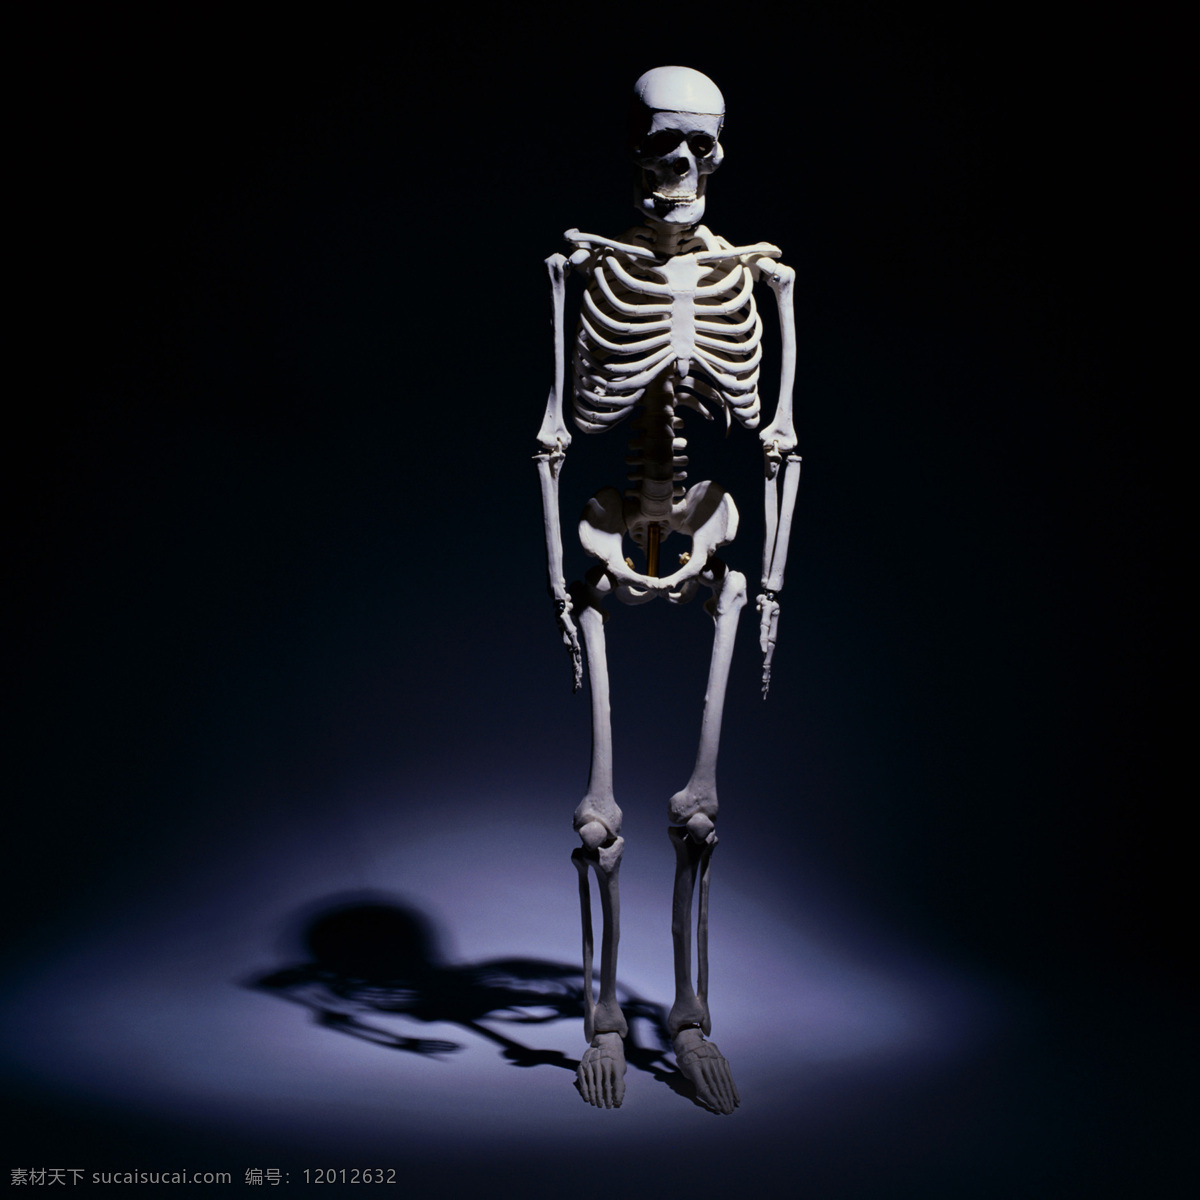 人体骨骼 人体 骨骼 人骨 骨头 医学 模型 透视 骷髅 自然摄影 生活百科